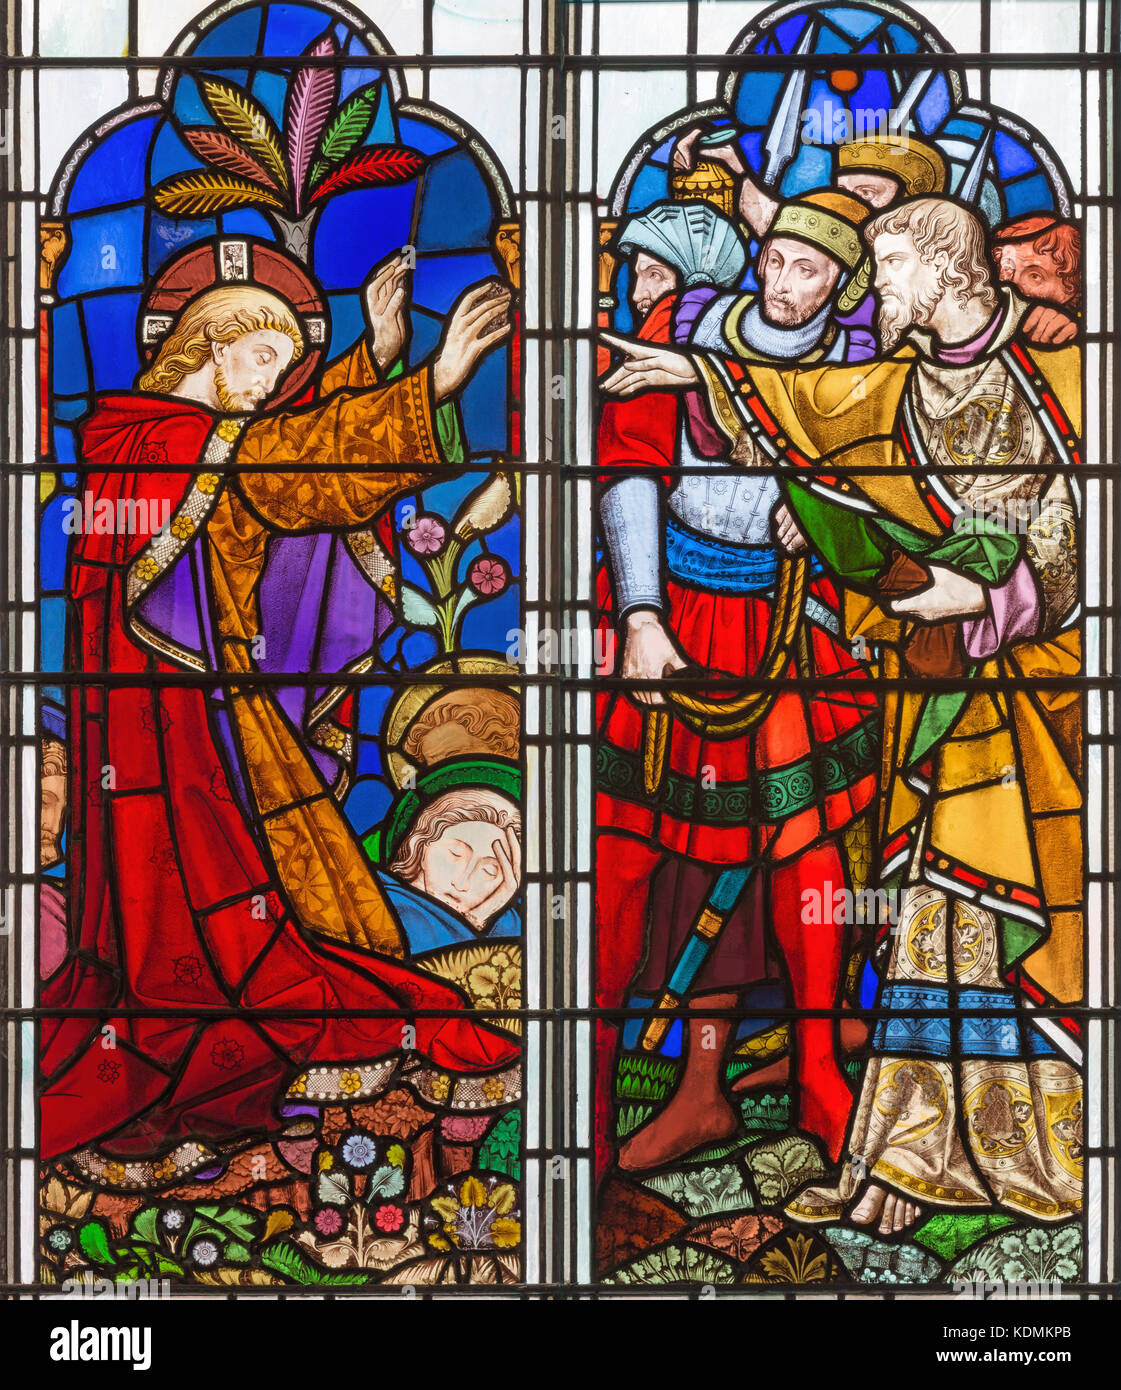 Paris, France - 14 septembre 2017 : l'arrestation de Jésus dans le jardin de Gethsémané et sur le vitrail de l'église St Michael cornhill. Banque D'Images